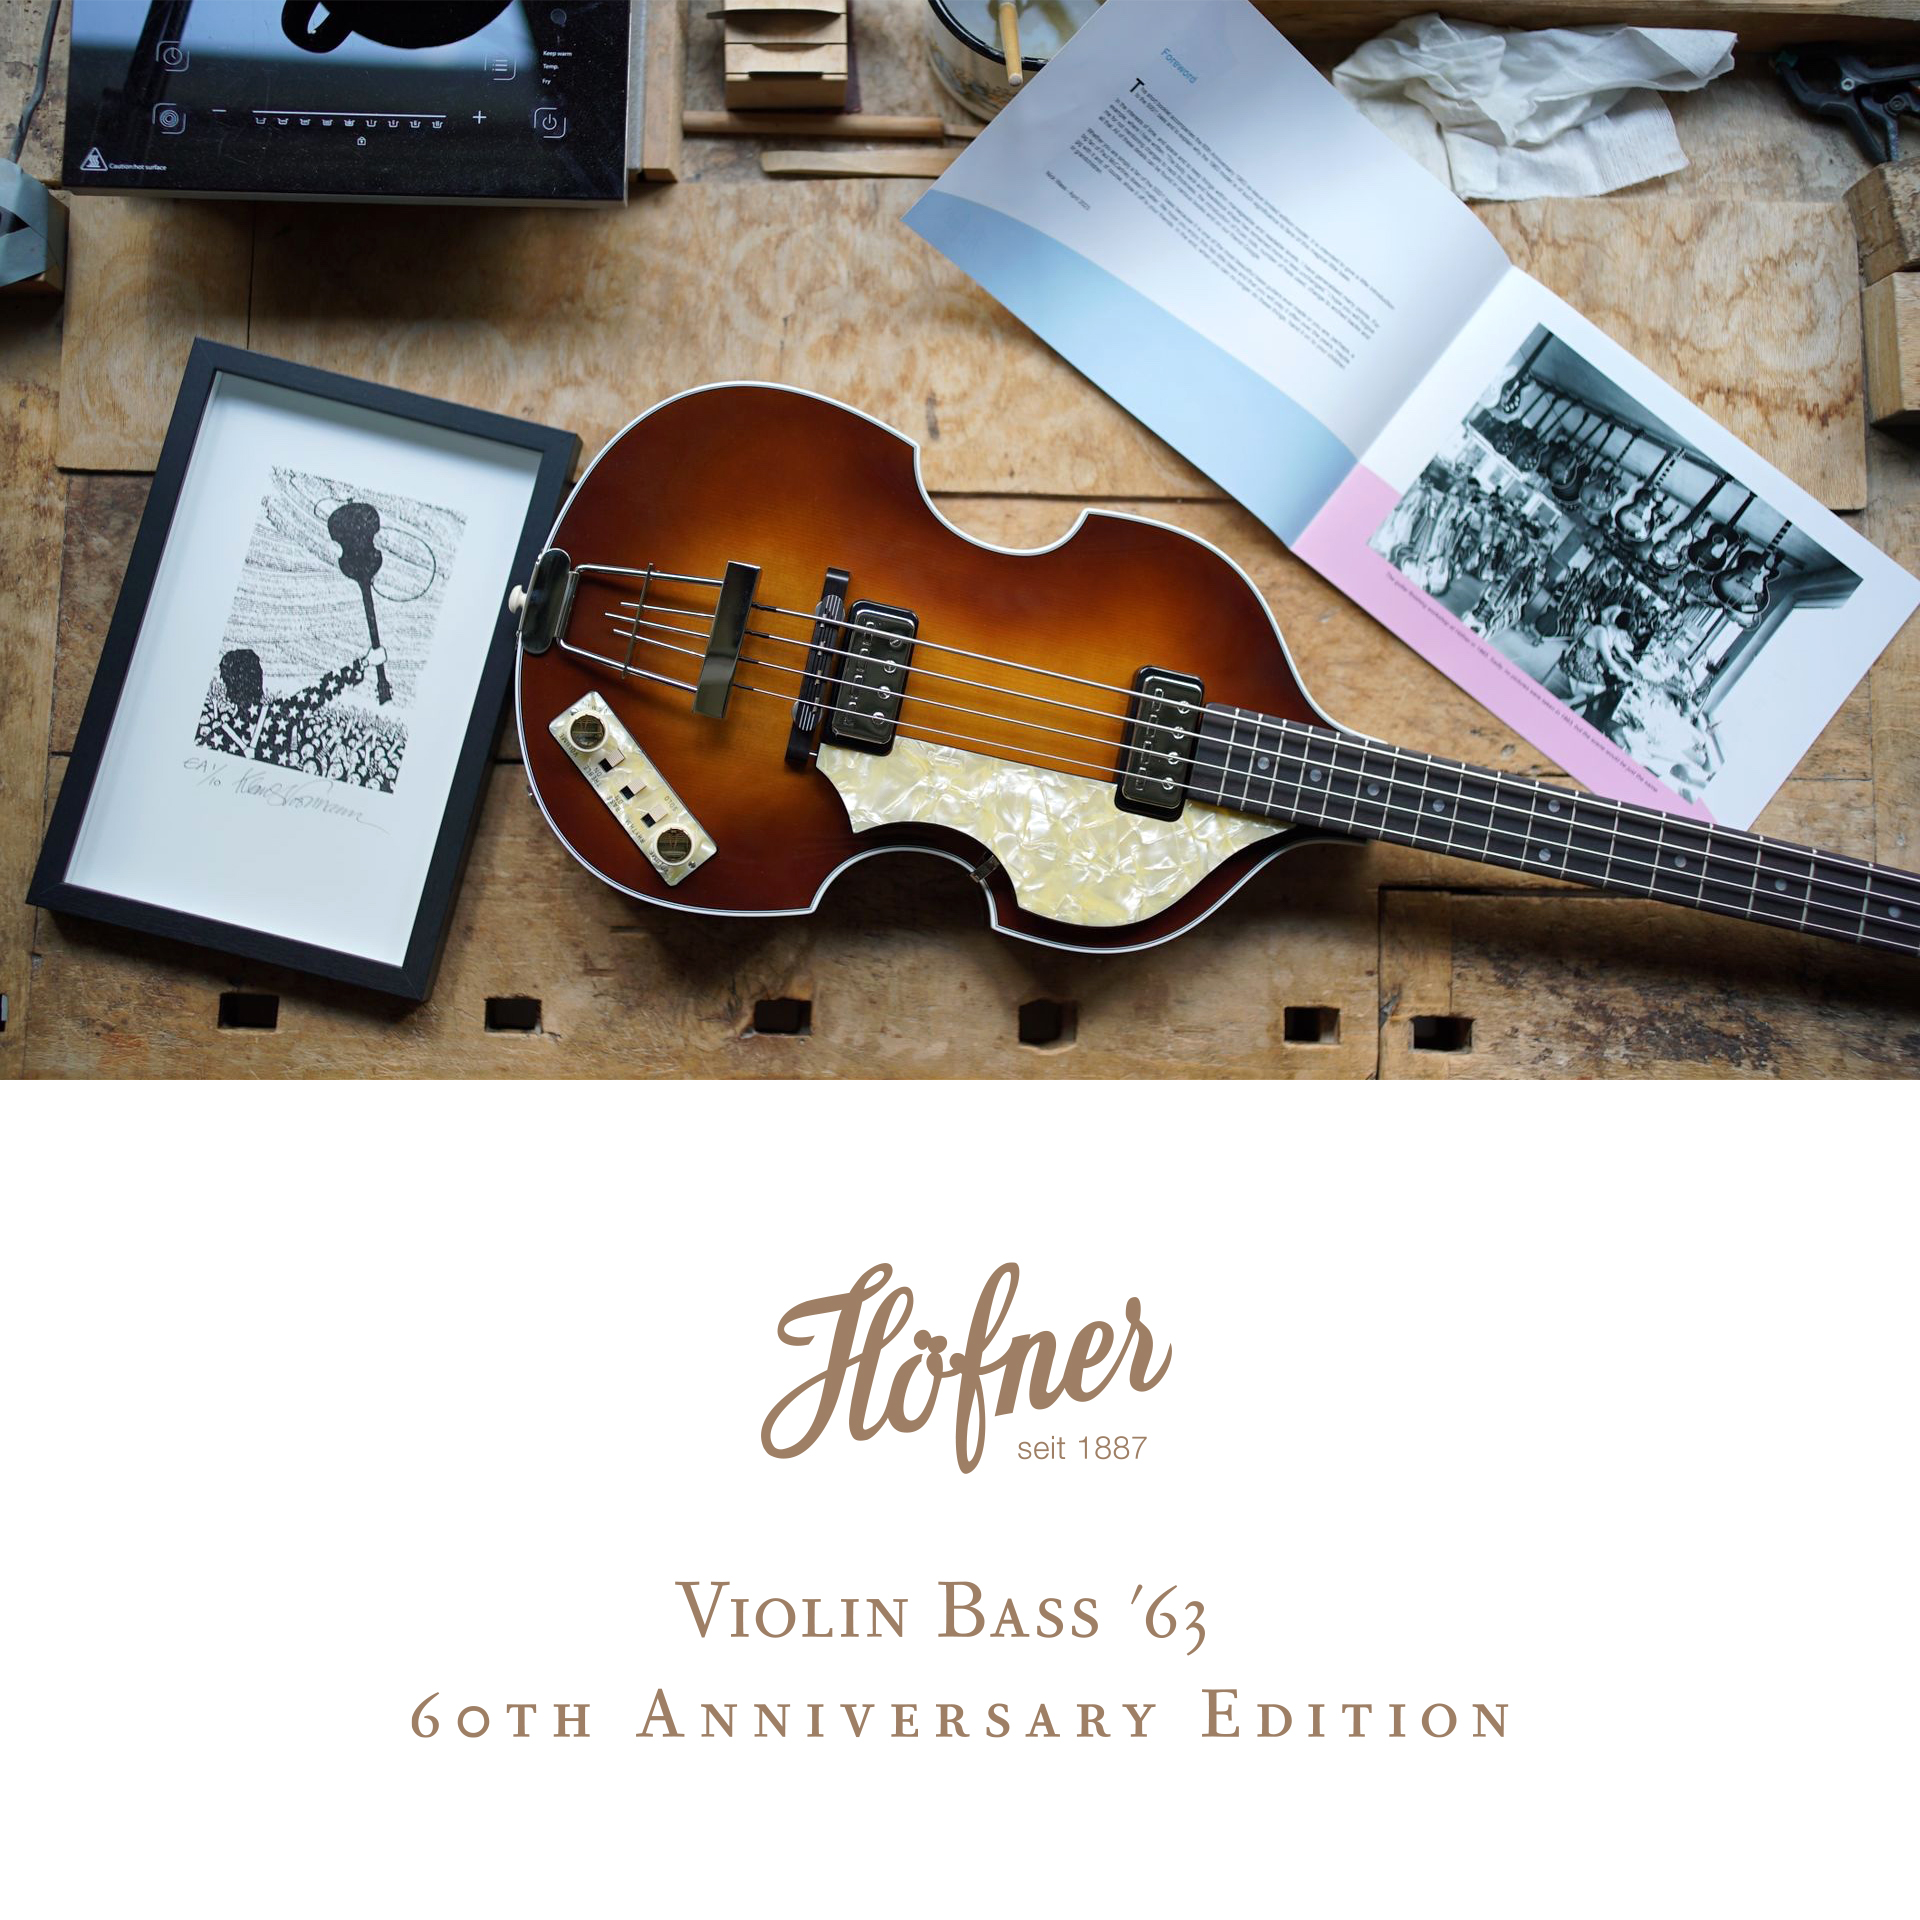 Höfner Violin Bass '63 - 60th Anniversary Edition